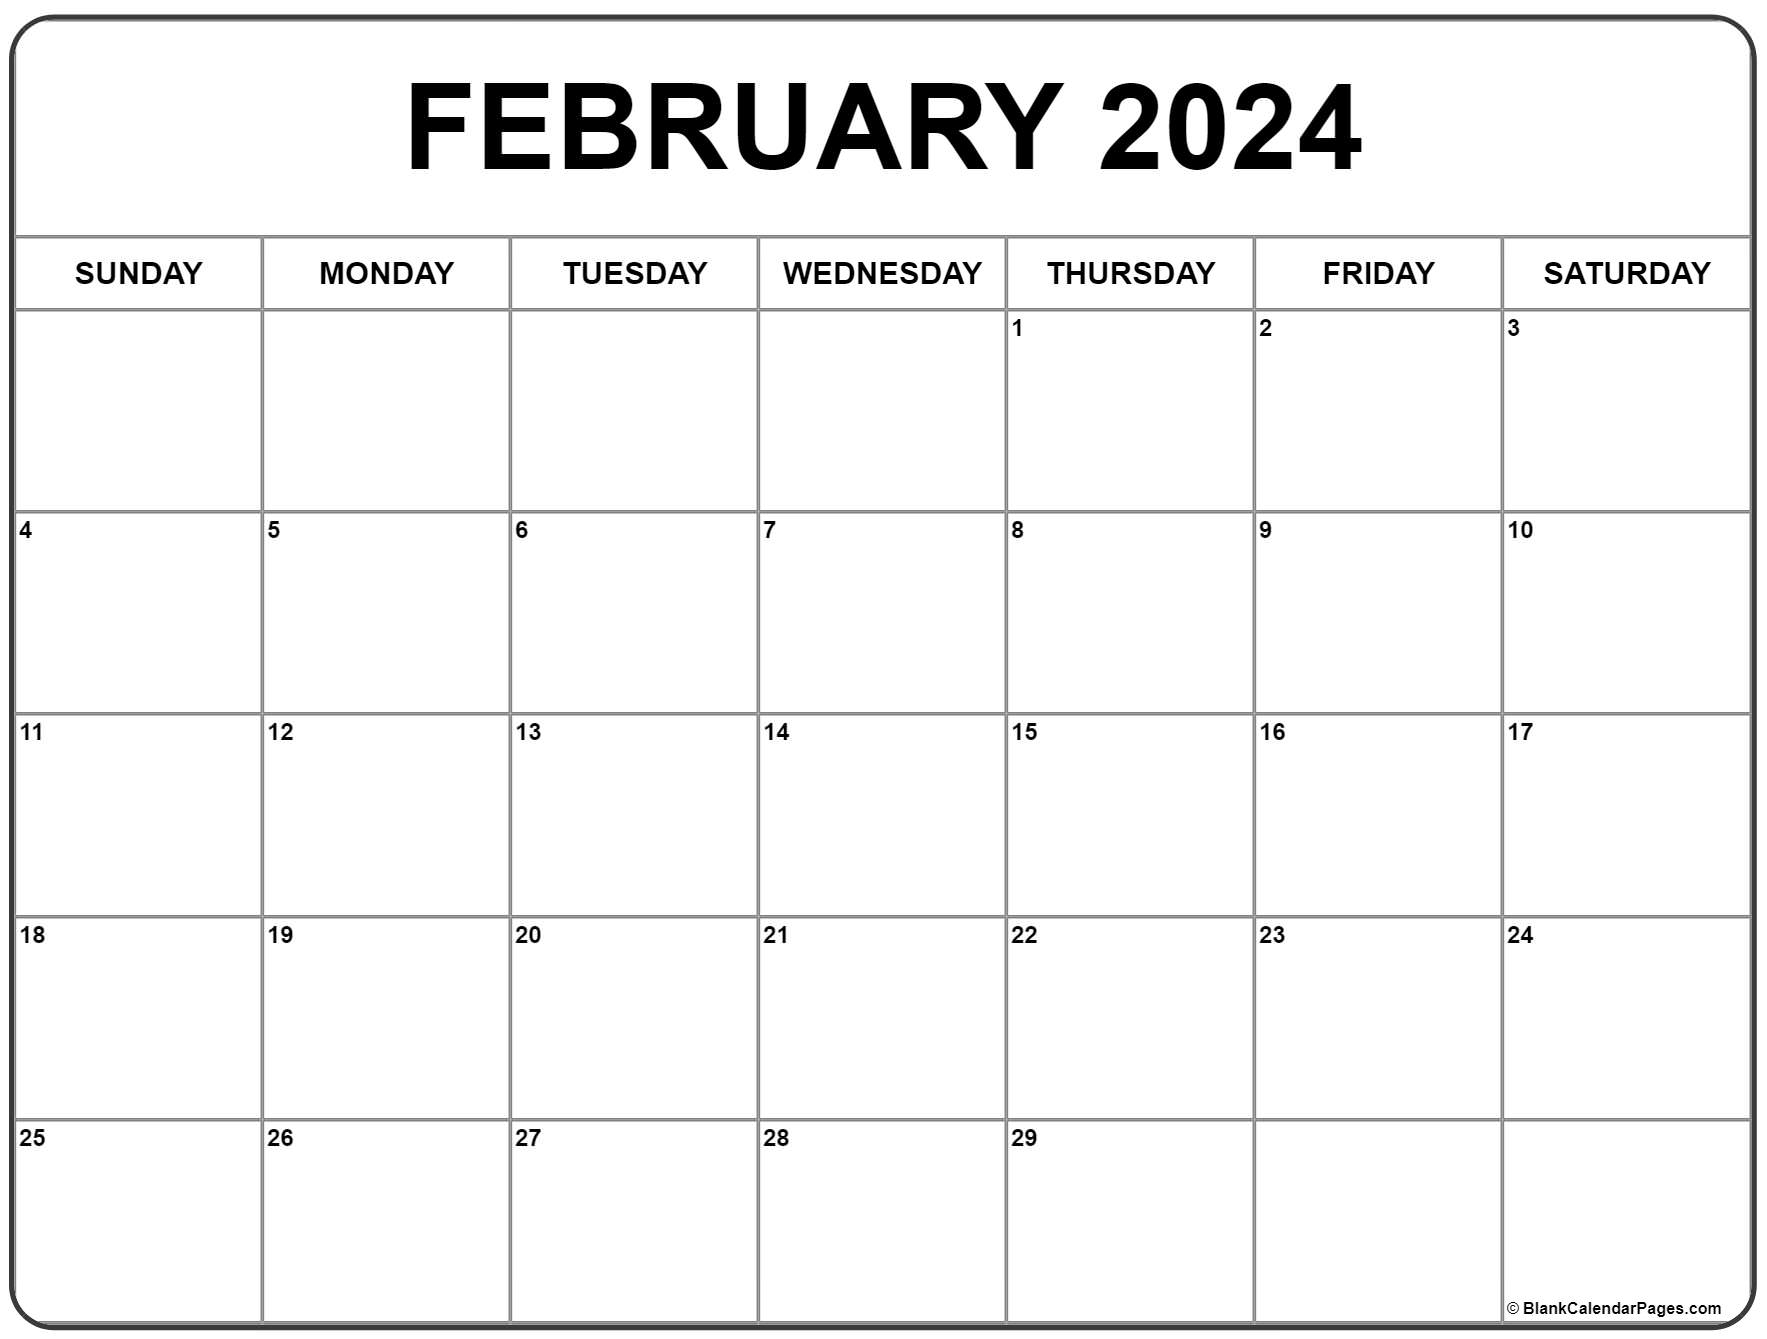 February 2024 Calendar | Free Printable Calendar for A Printable Calendar February 2024